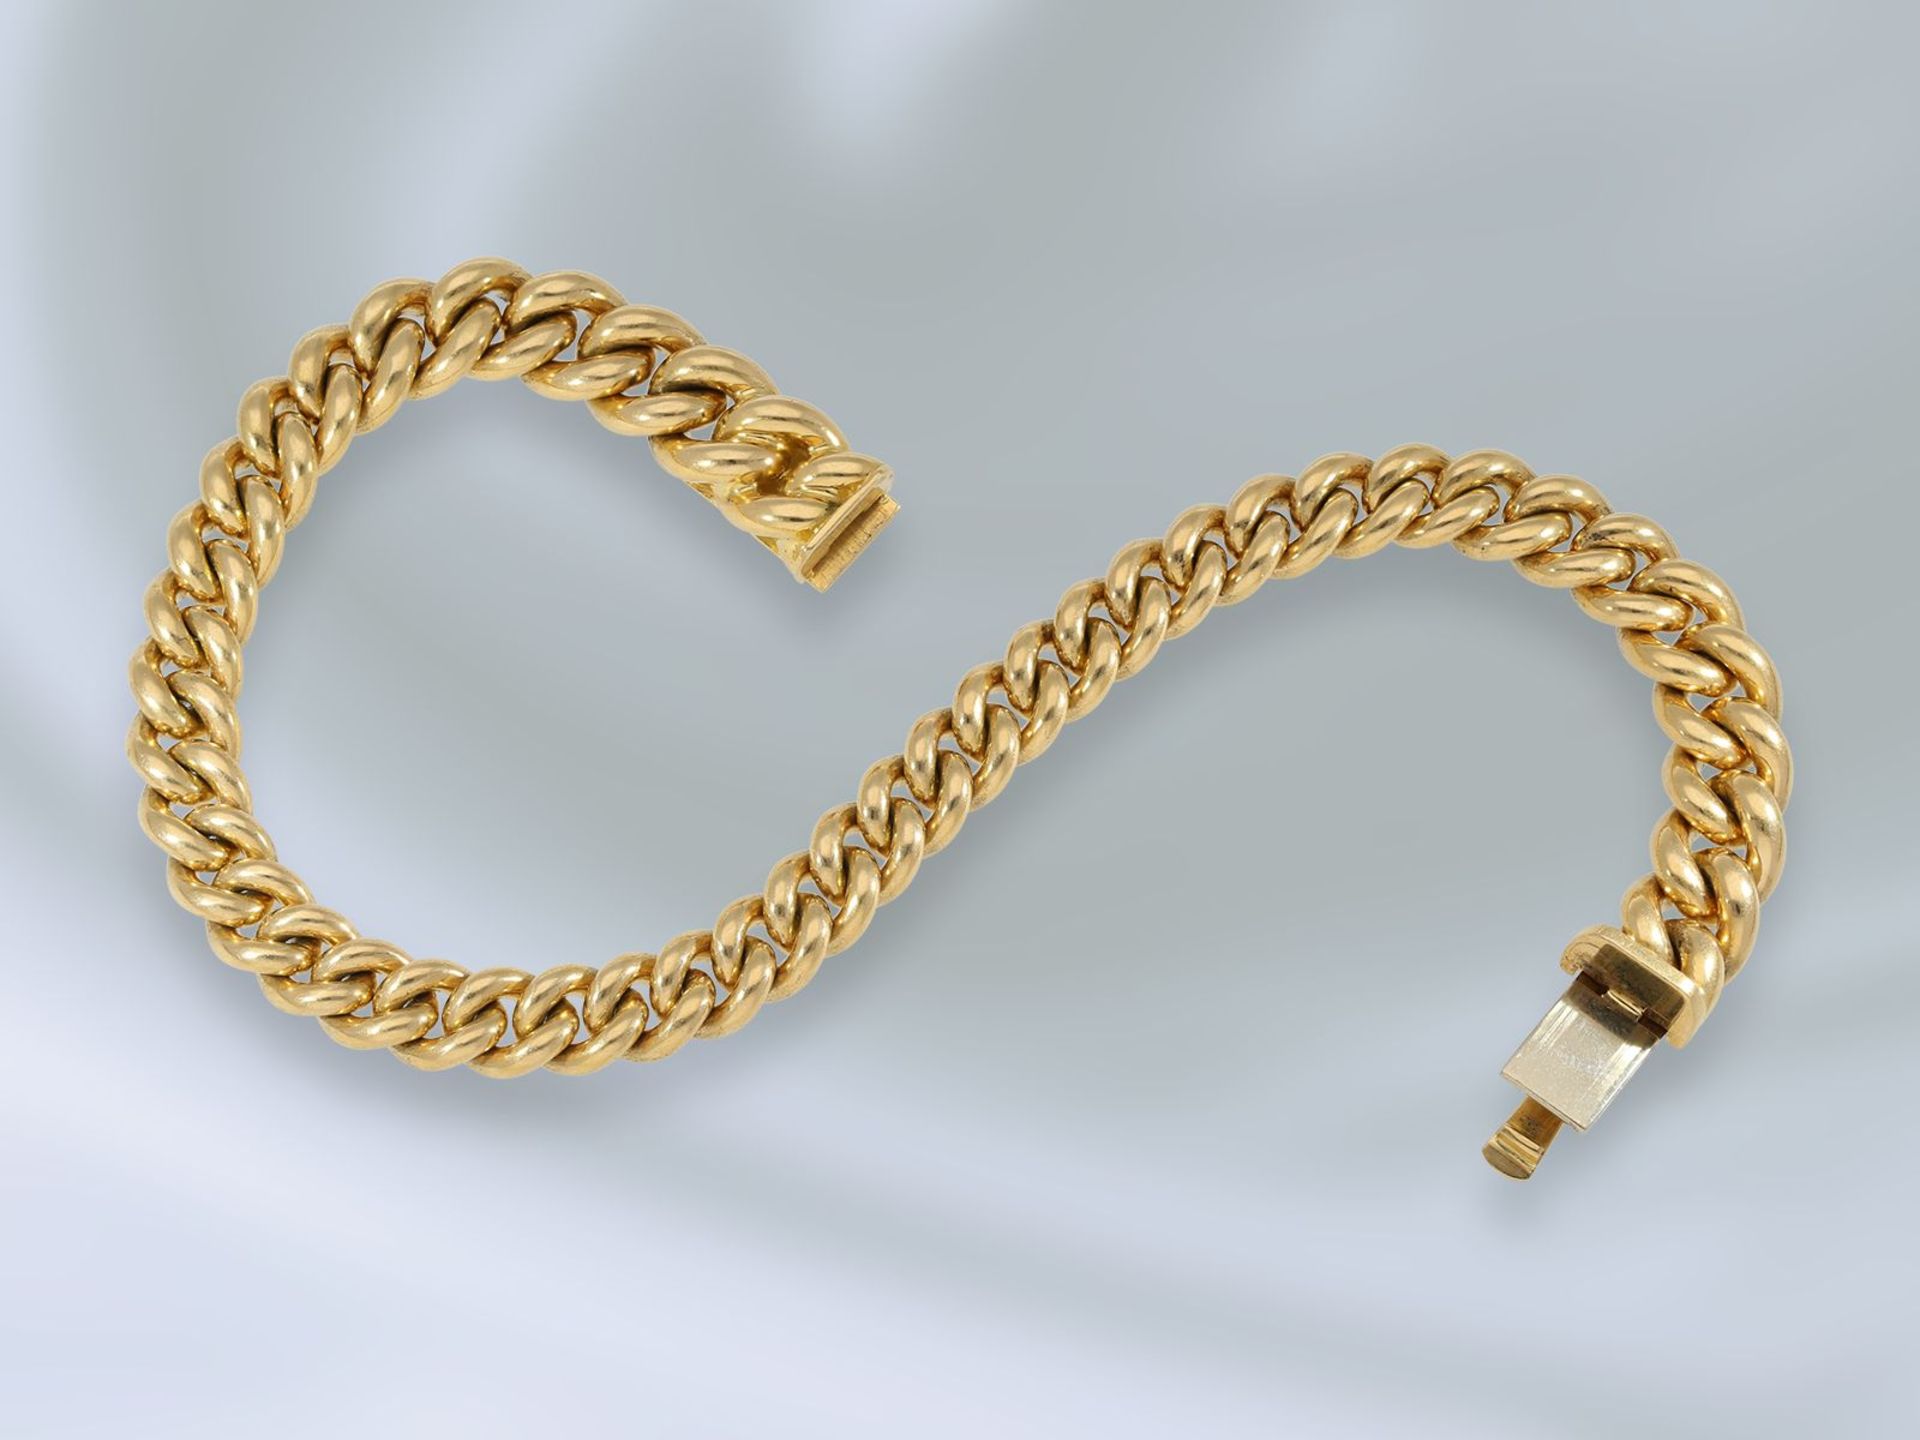 Armband: sehr massive Goldschmiedearbeit, bez. Handarbeit, 18K GoldCa. 23cm lang, ca. 68,2g, 18K